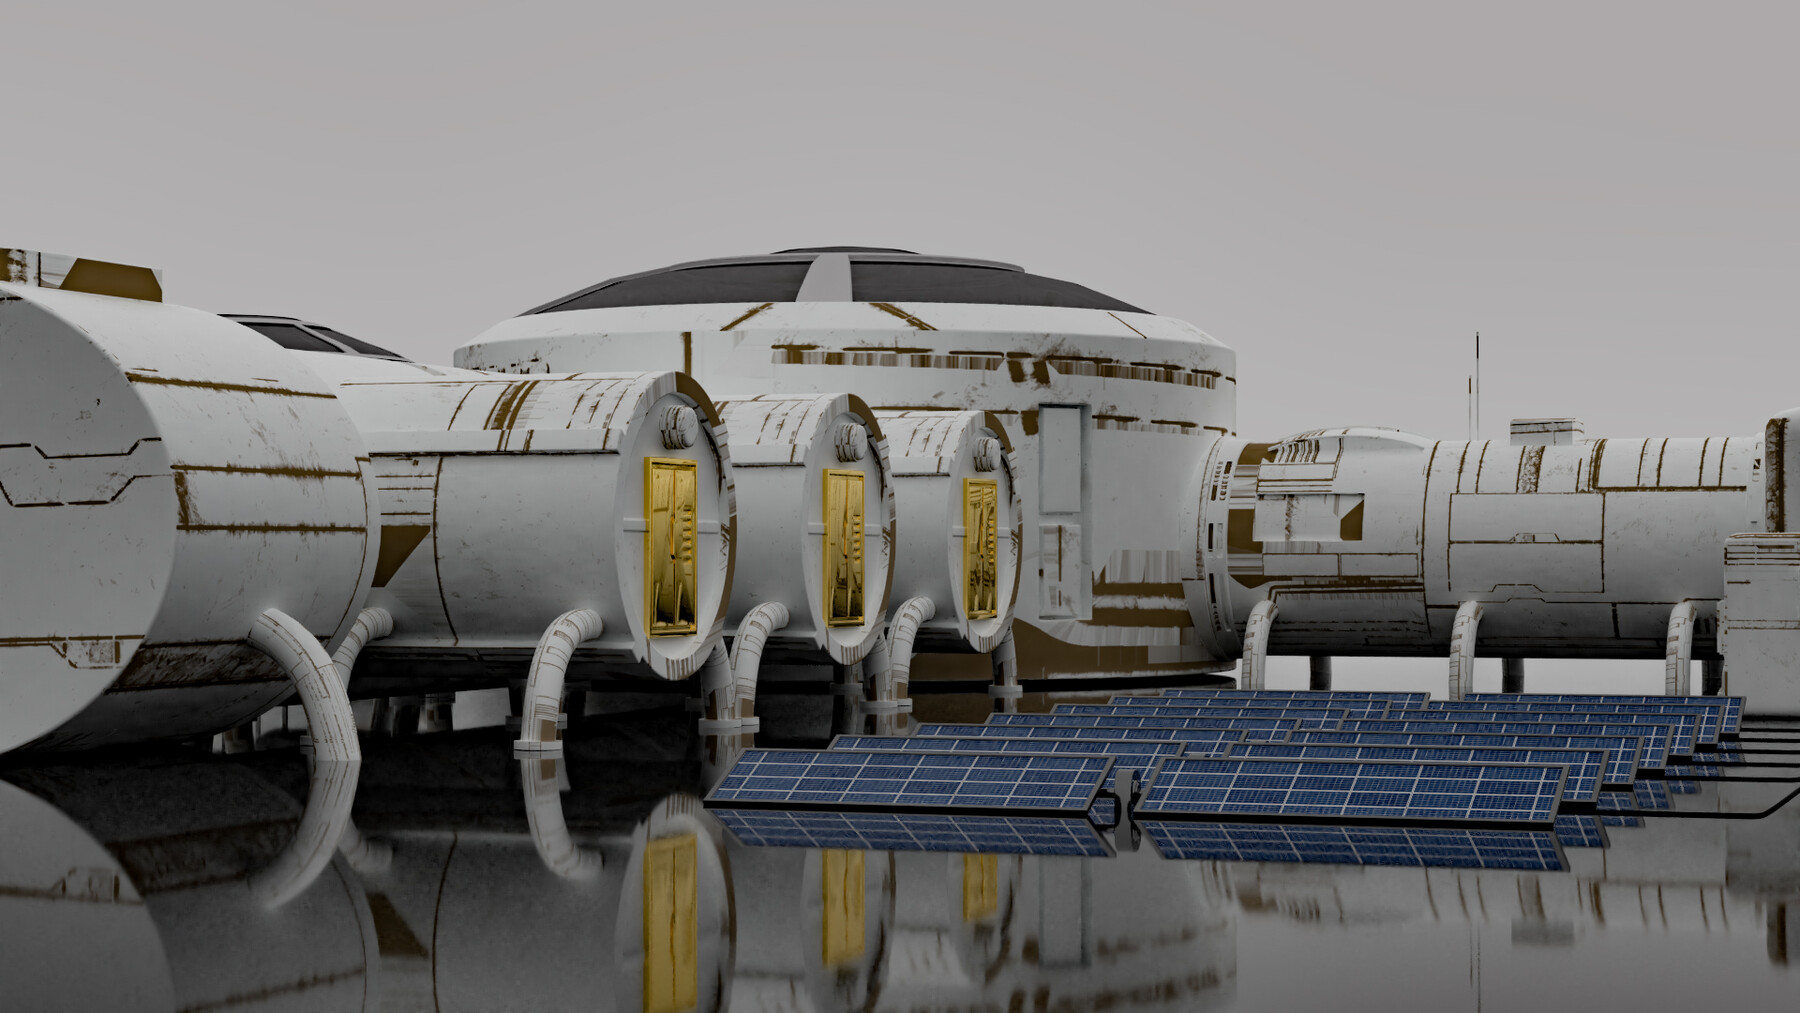 ArtStation - Space Colonies game logo